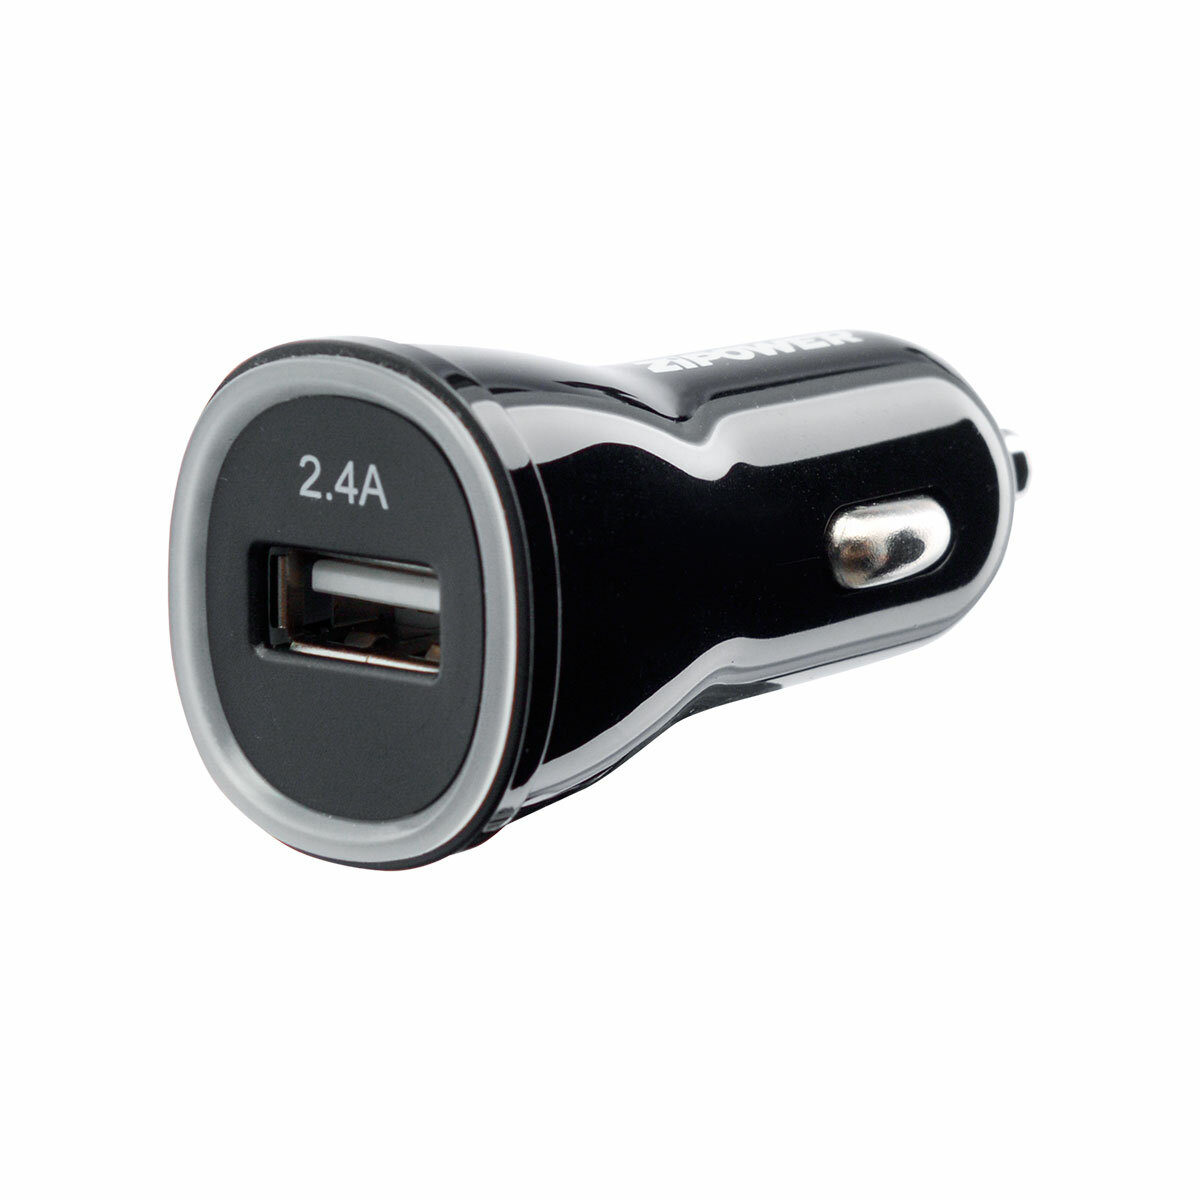 ZIPOWER USB зарядное устройство, 1 USB 5 В/2,4 A, 12 Вт, 6 см, черный, PM6681